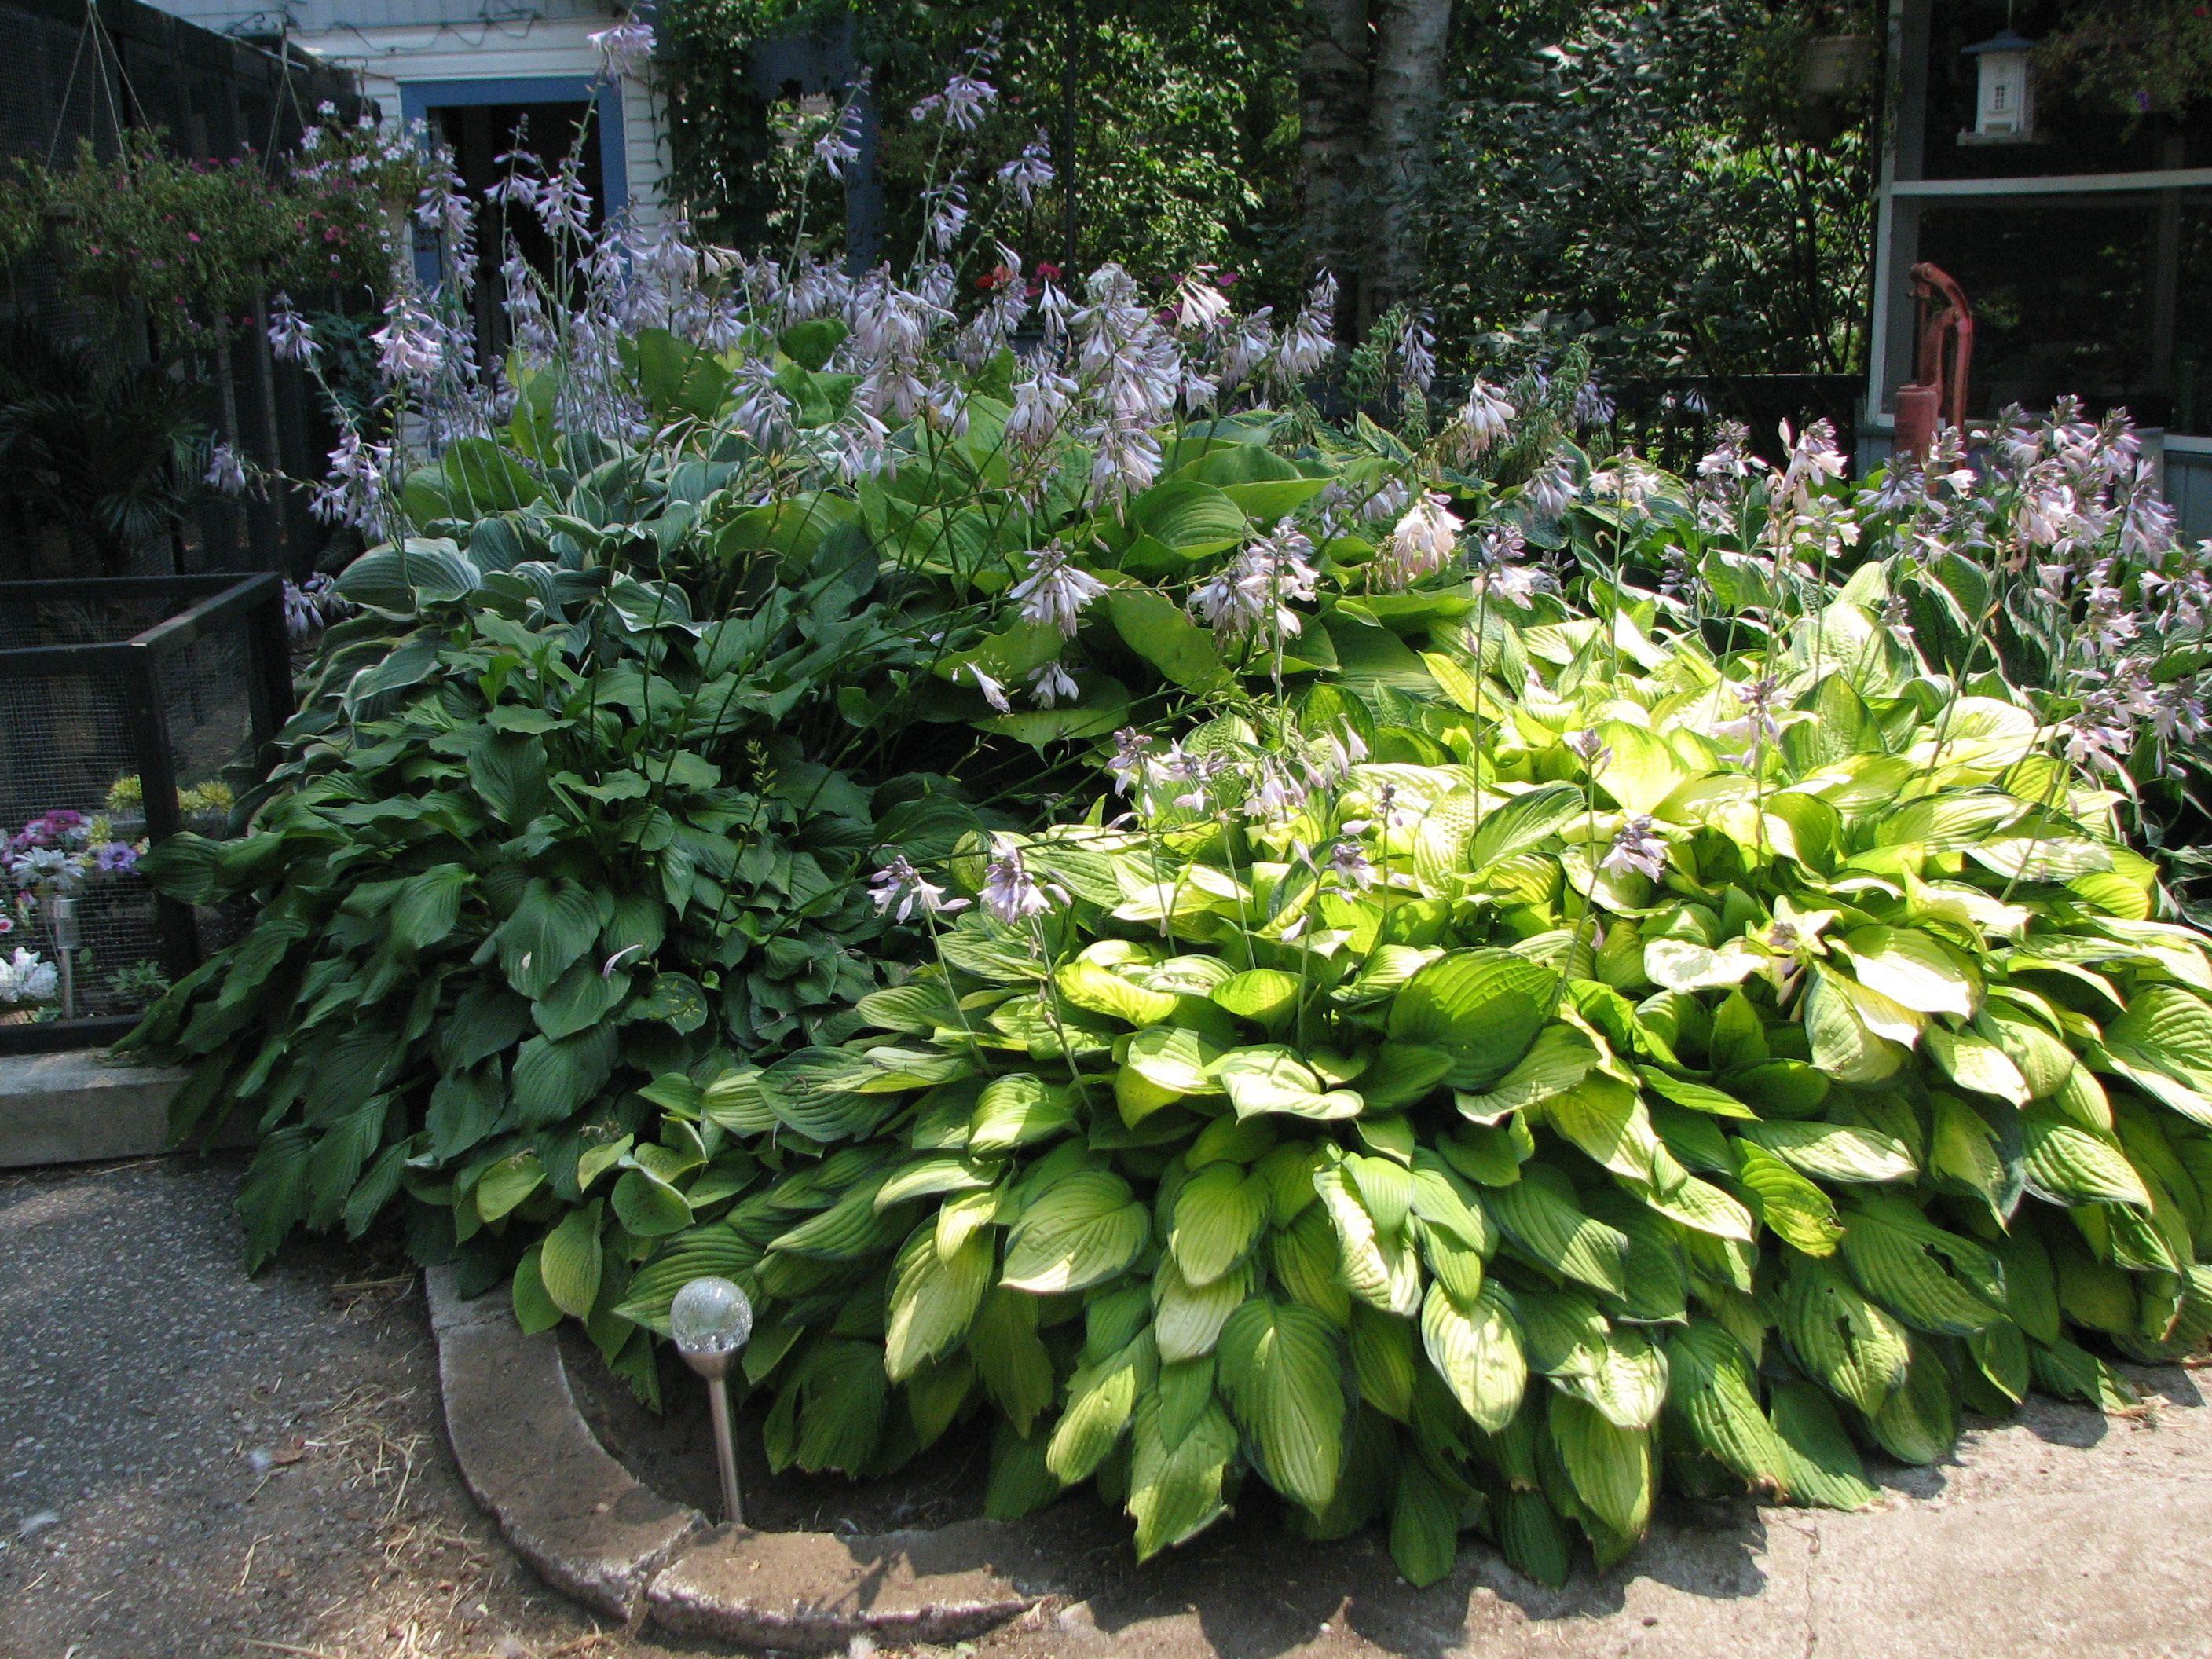 Best ideas about Hosta Garden Ideas
. Save or Pin hosta garden Garden and Landscaping Ideas Now.